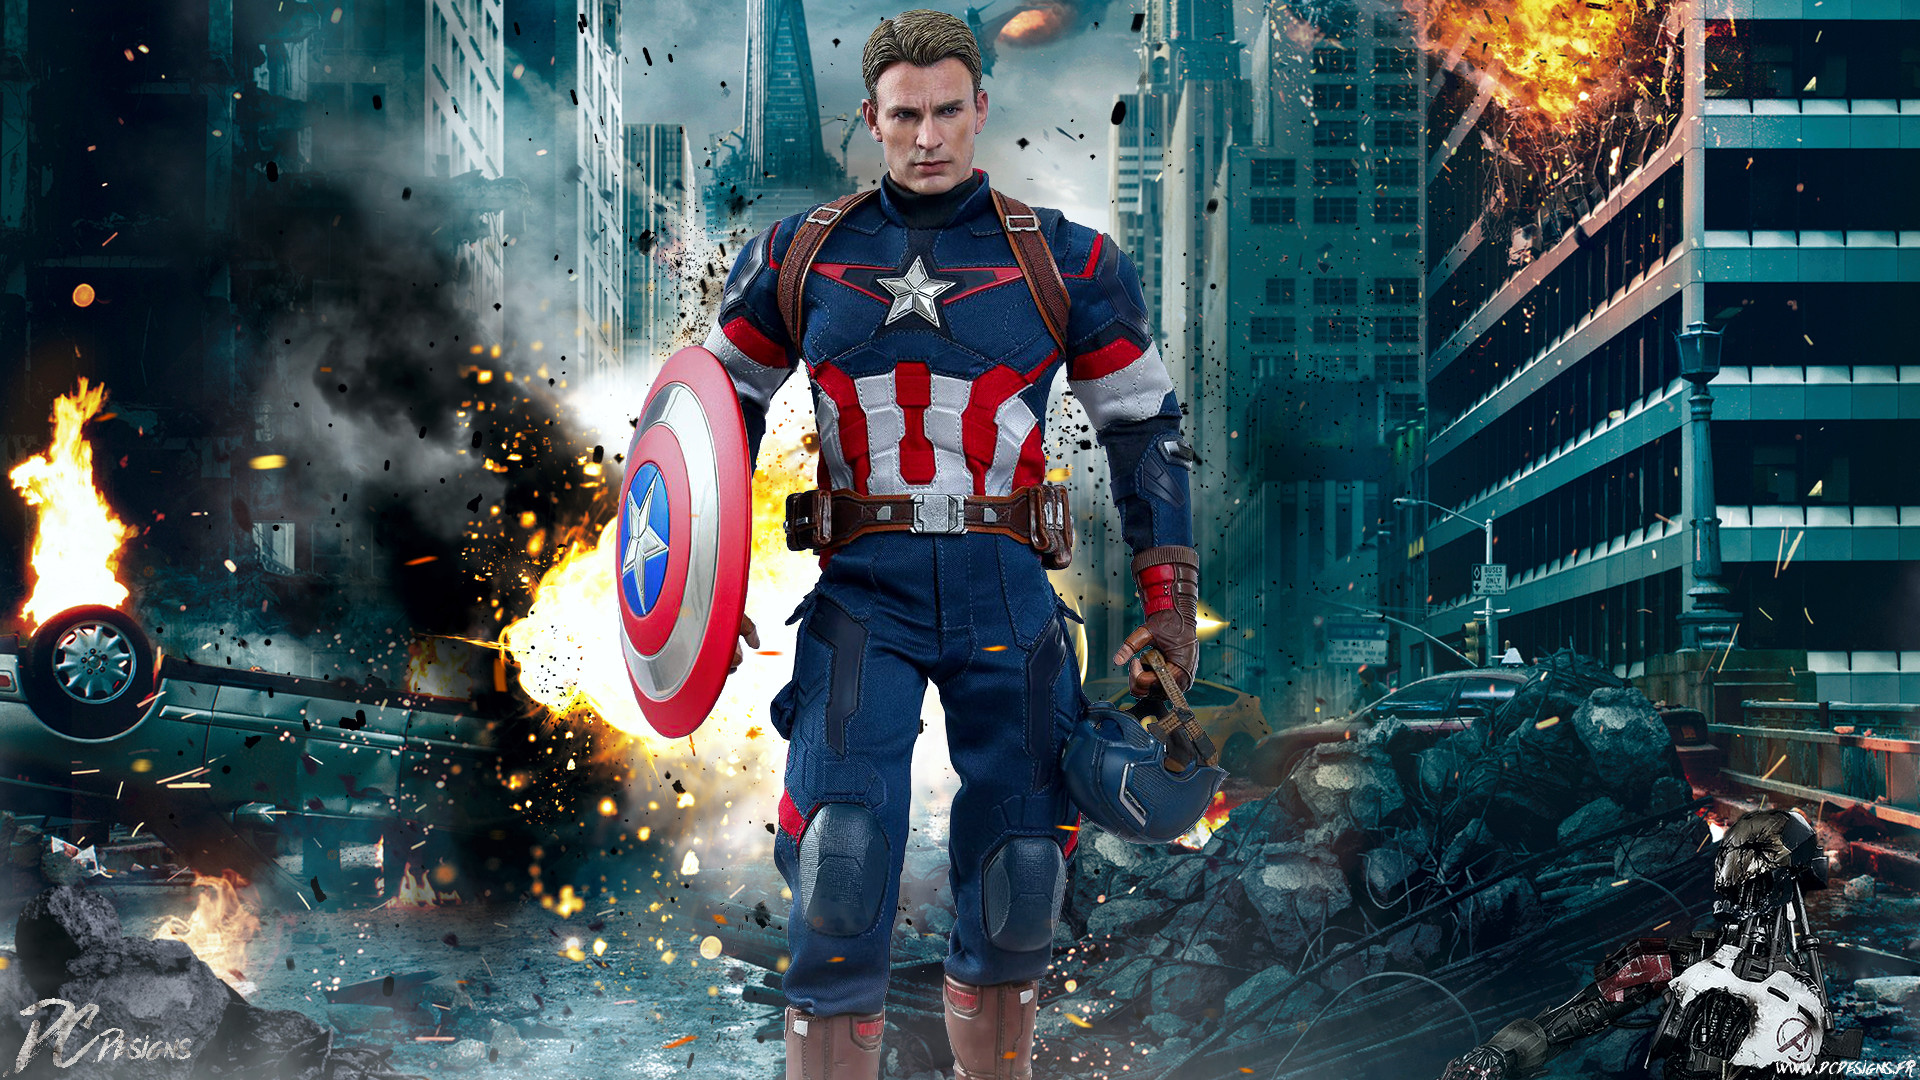 1920x1080 Movie - The Avengers Hot Toys Fan Art Captain America Avengers Chris Evans  Wallpaper